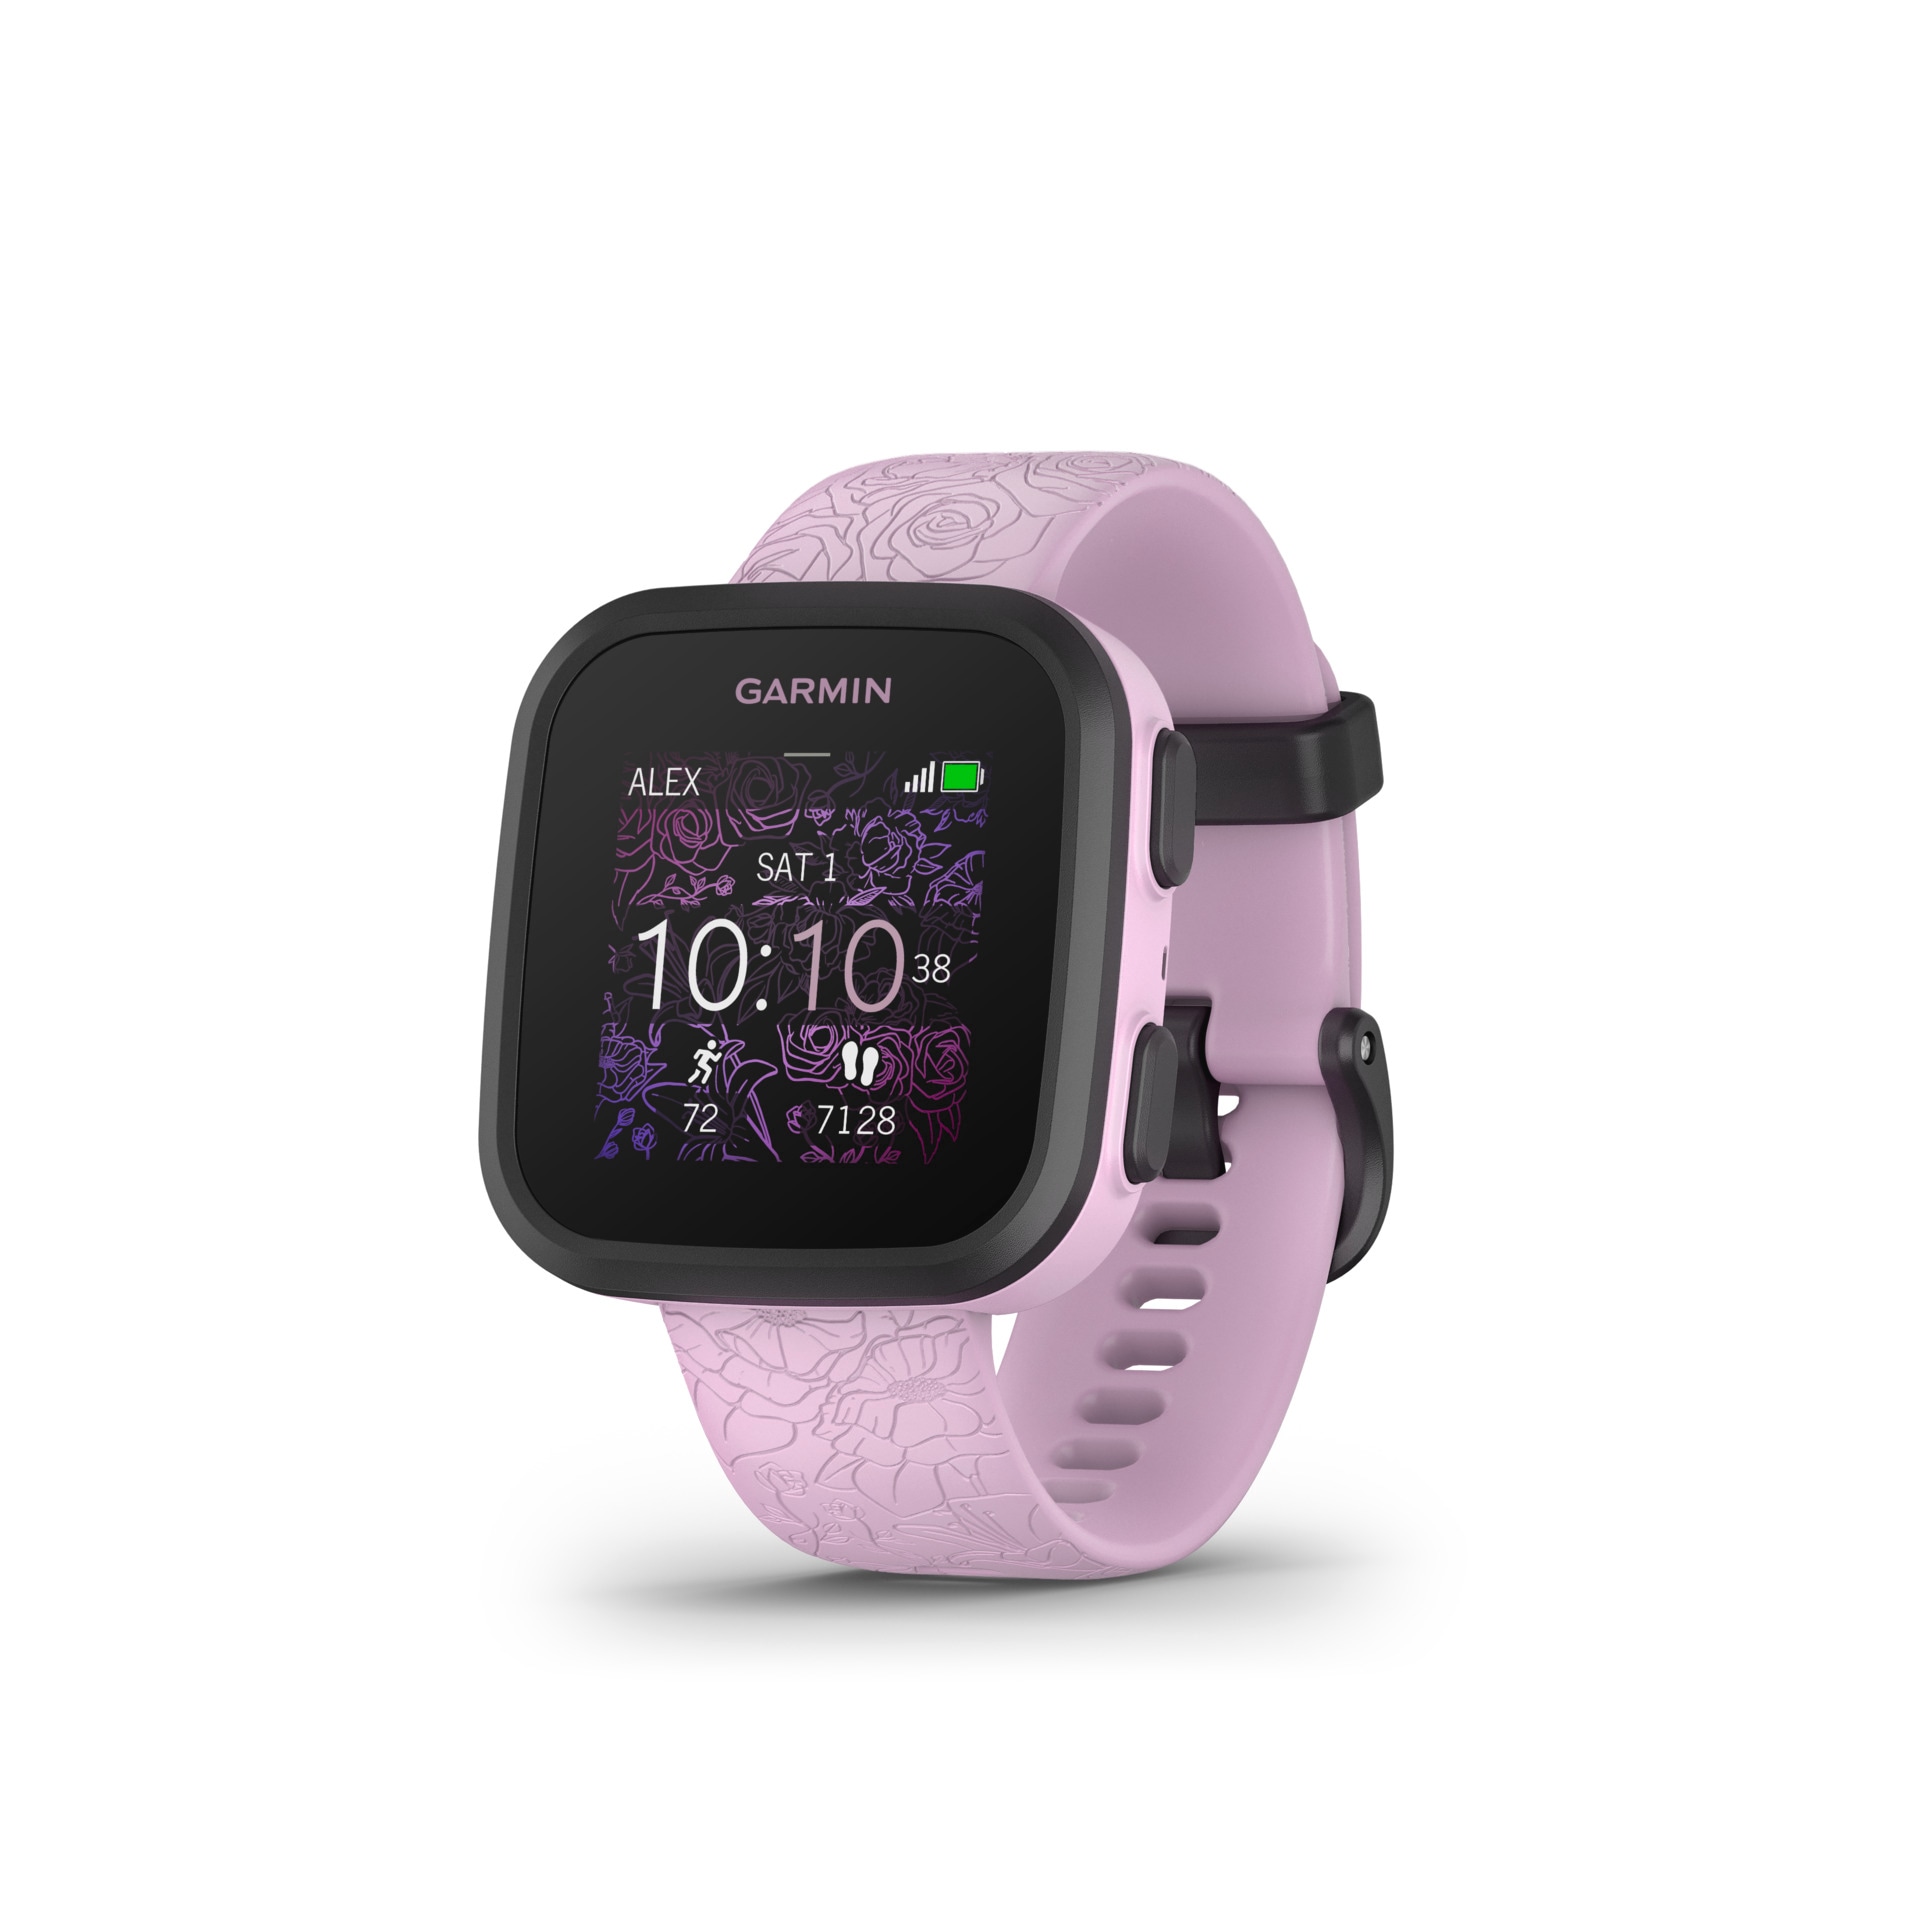 Garmin Smartwatch kaufen bequem »BOUNCE«